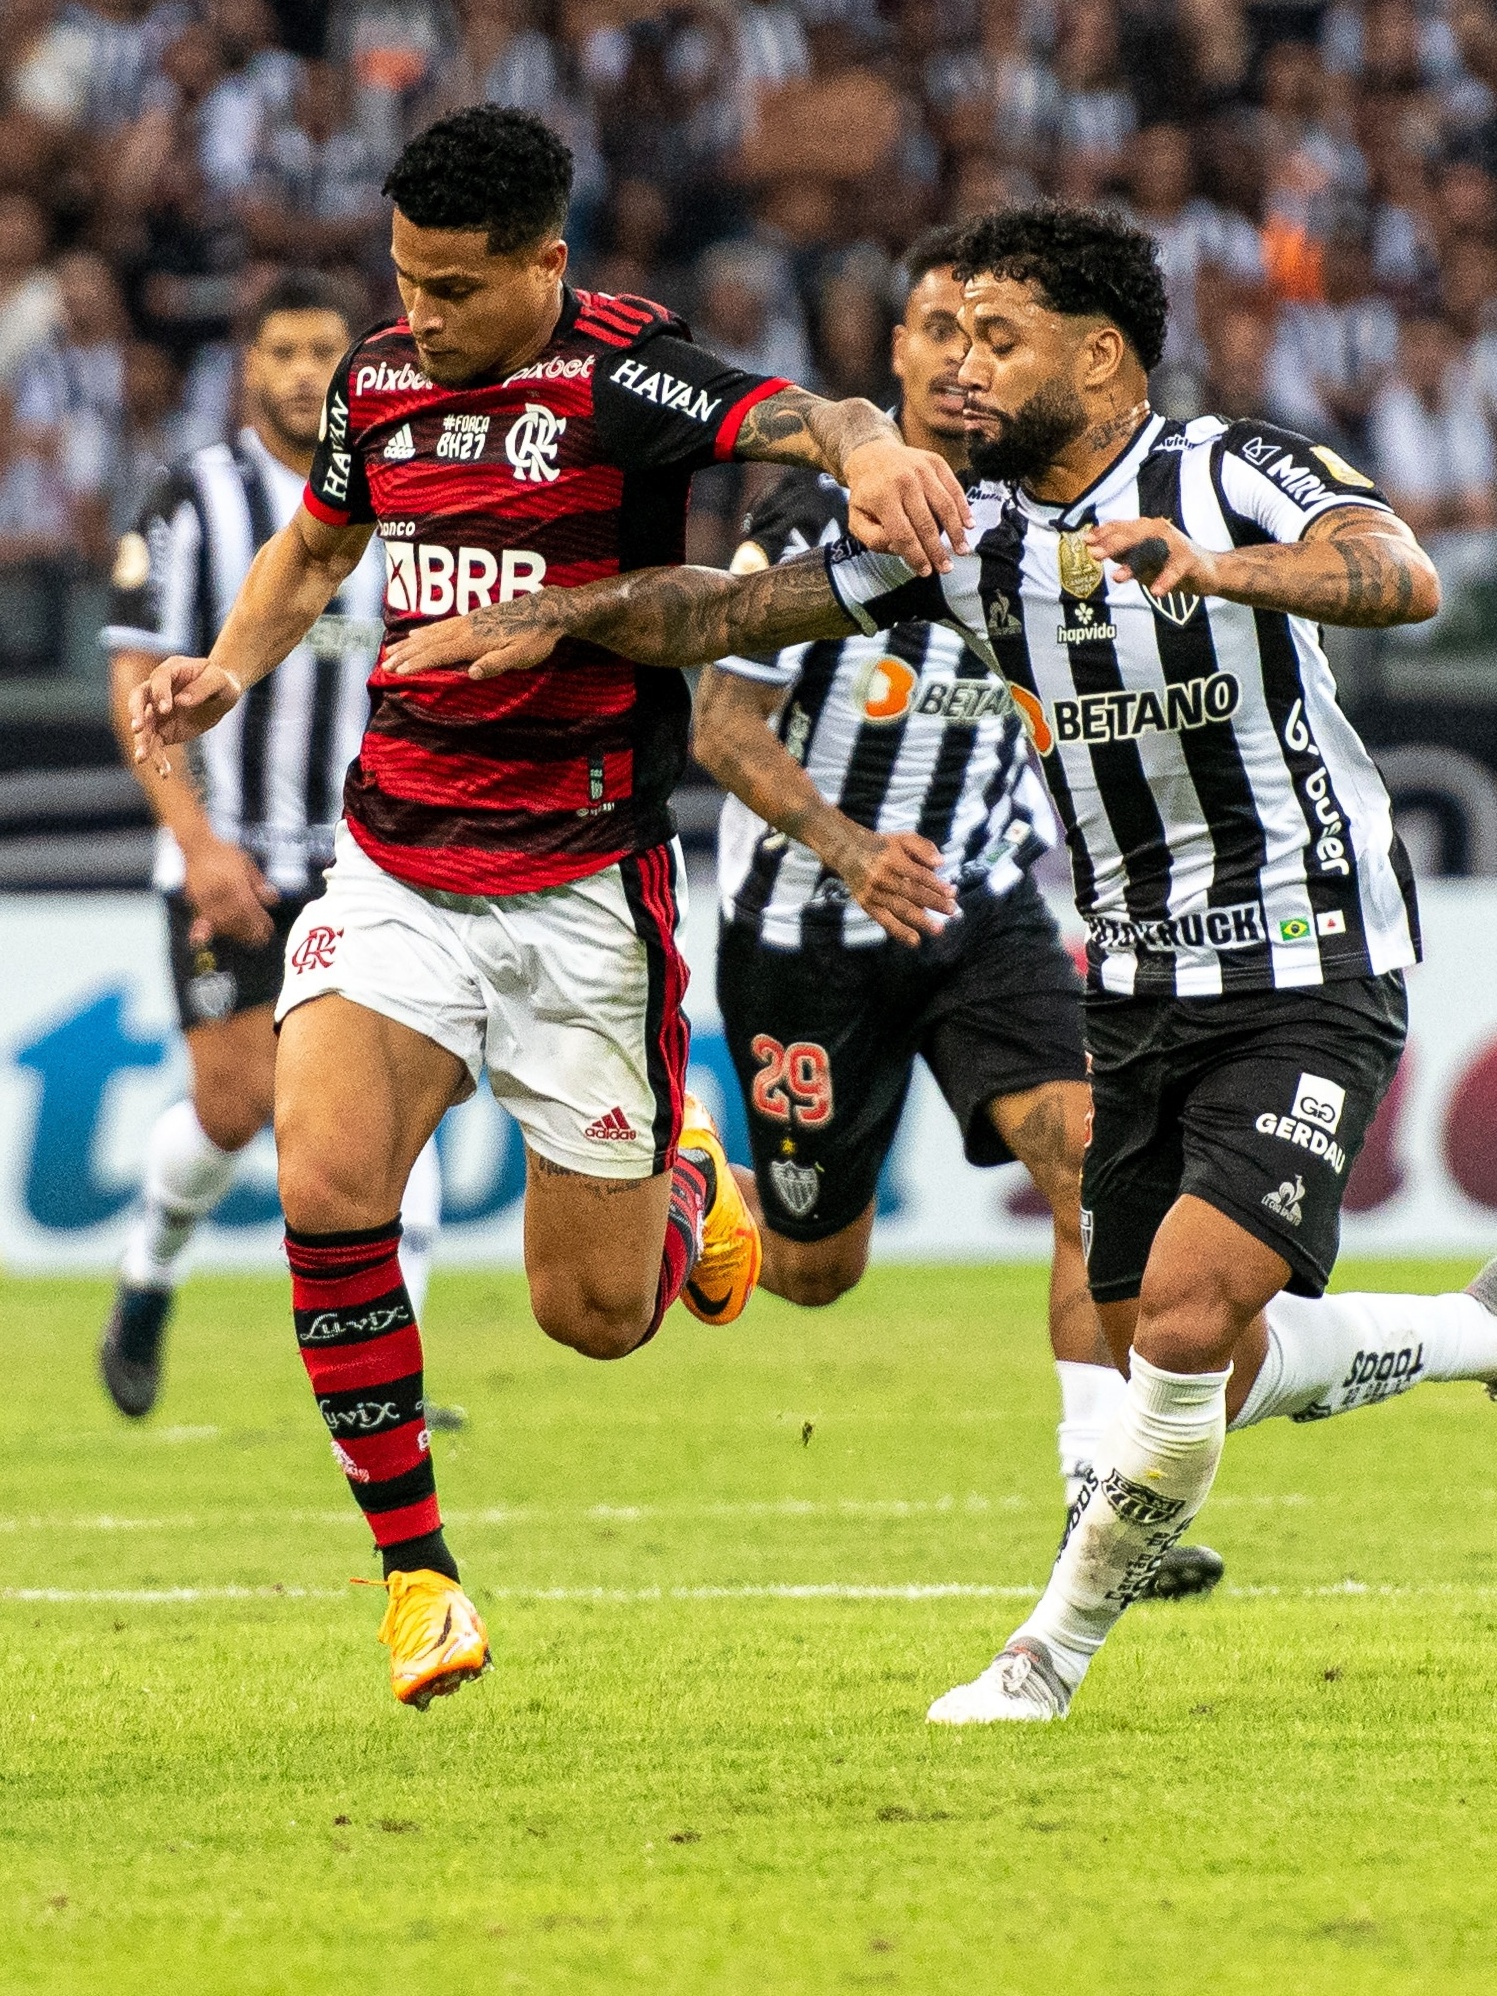 Brasileirão: como foram os últimos jogos entre Flamengo e Atlético-MG?